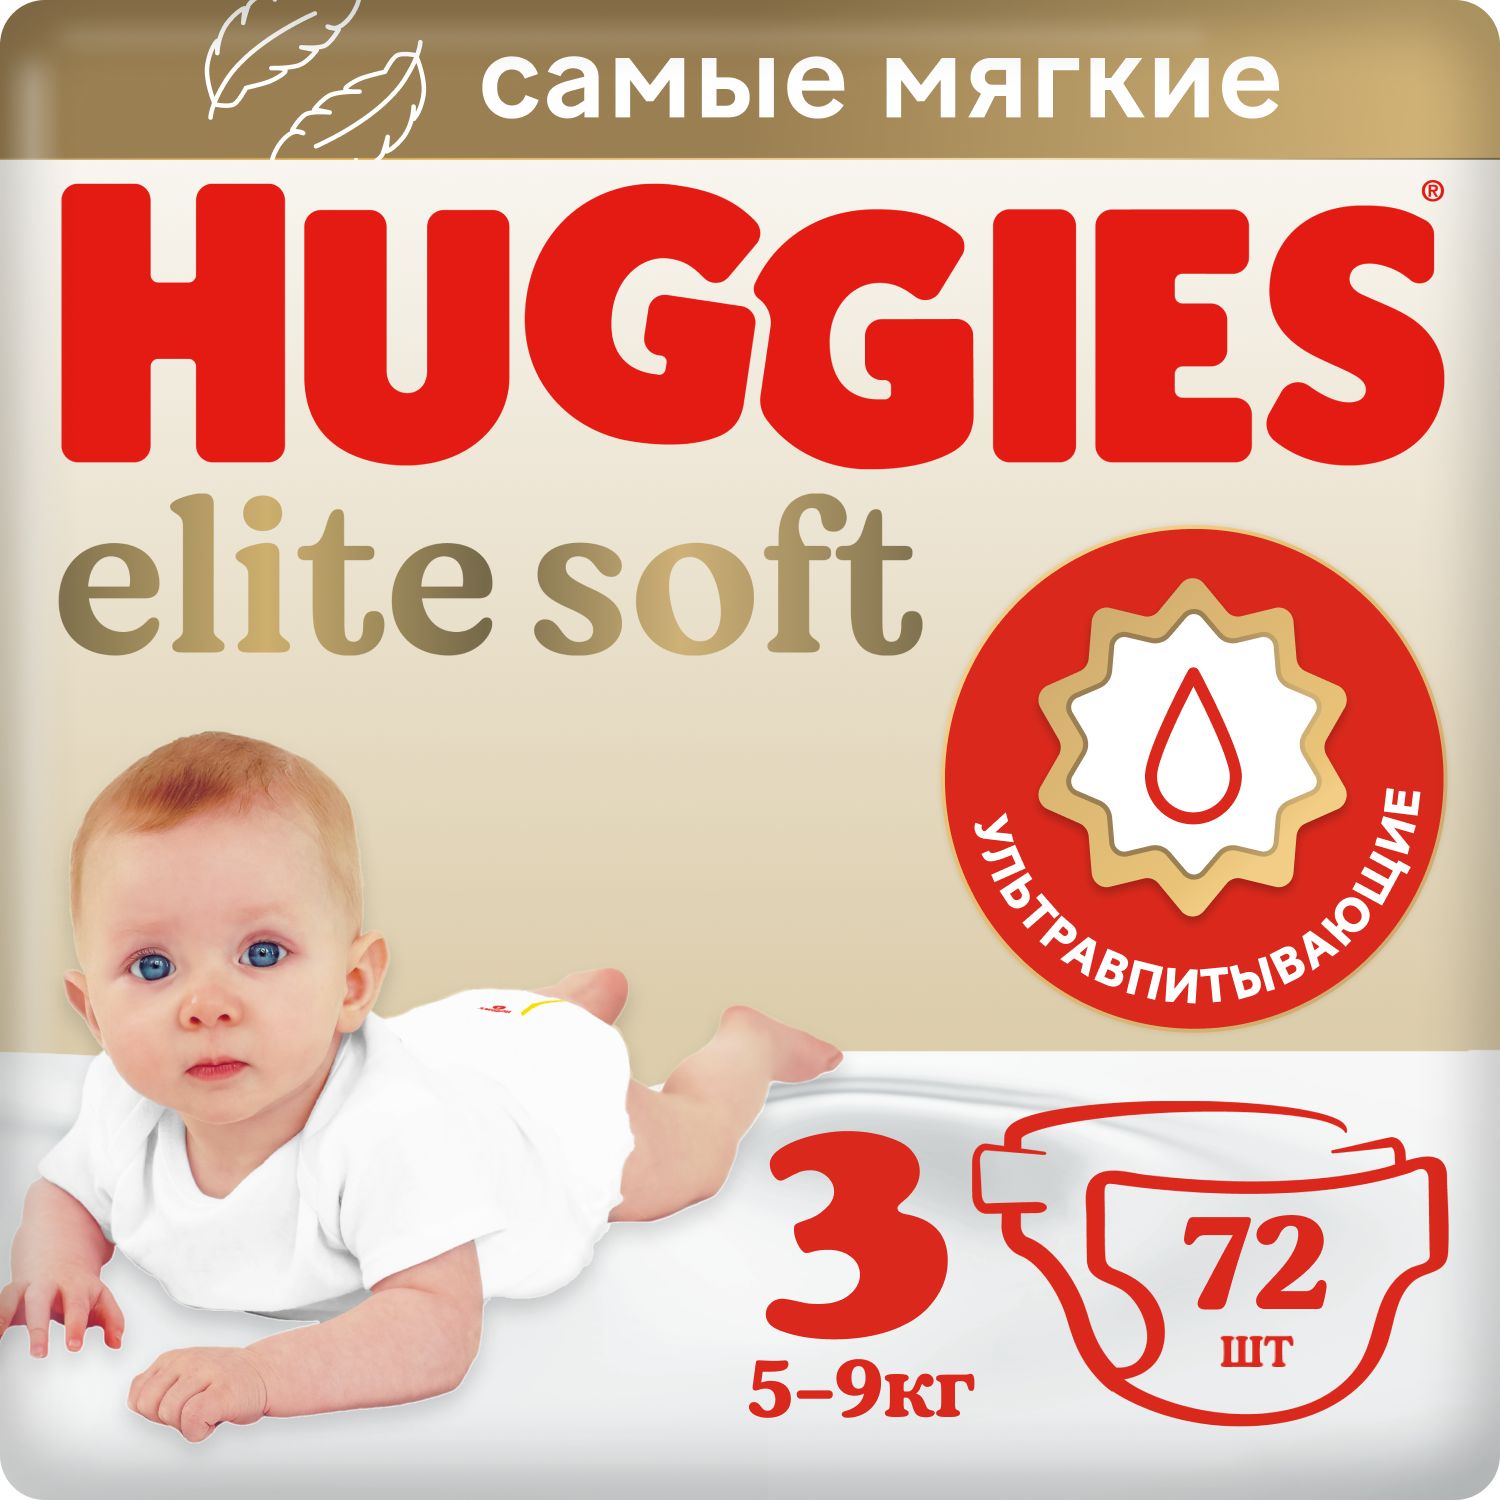 HUGGIES ELITE SOFT vienkartinės sauskelnės 3, 5-9kg, 72 vnt, žema kaina